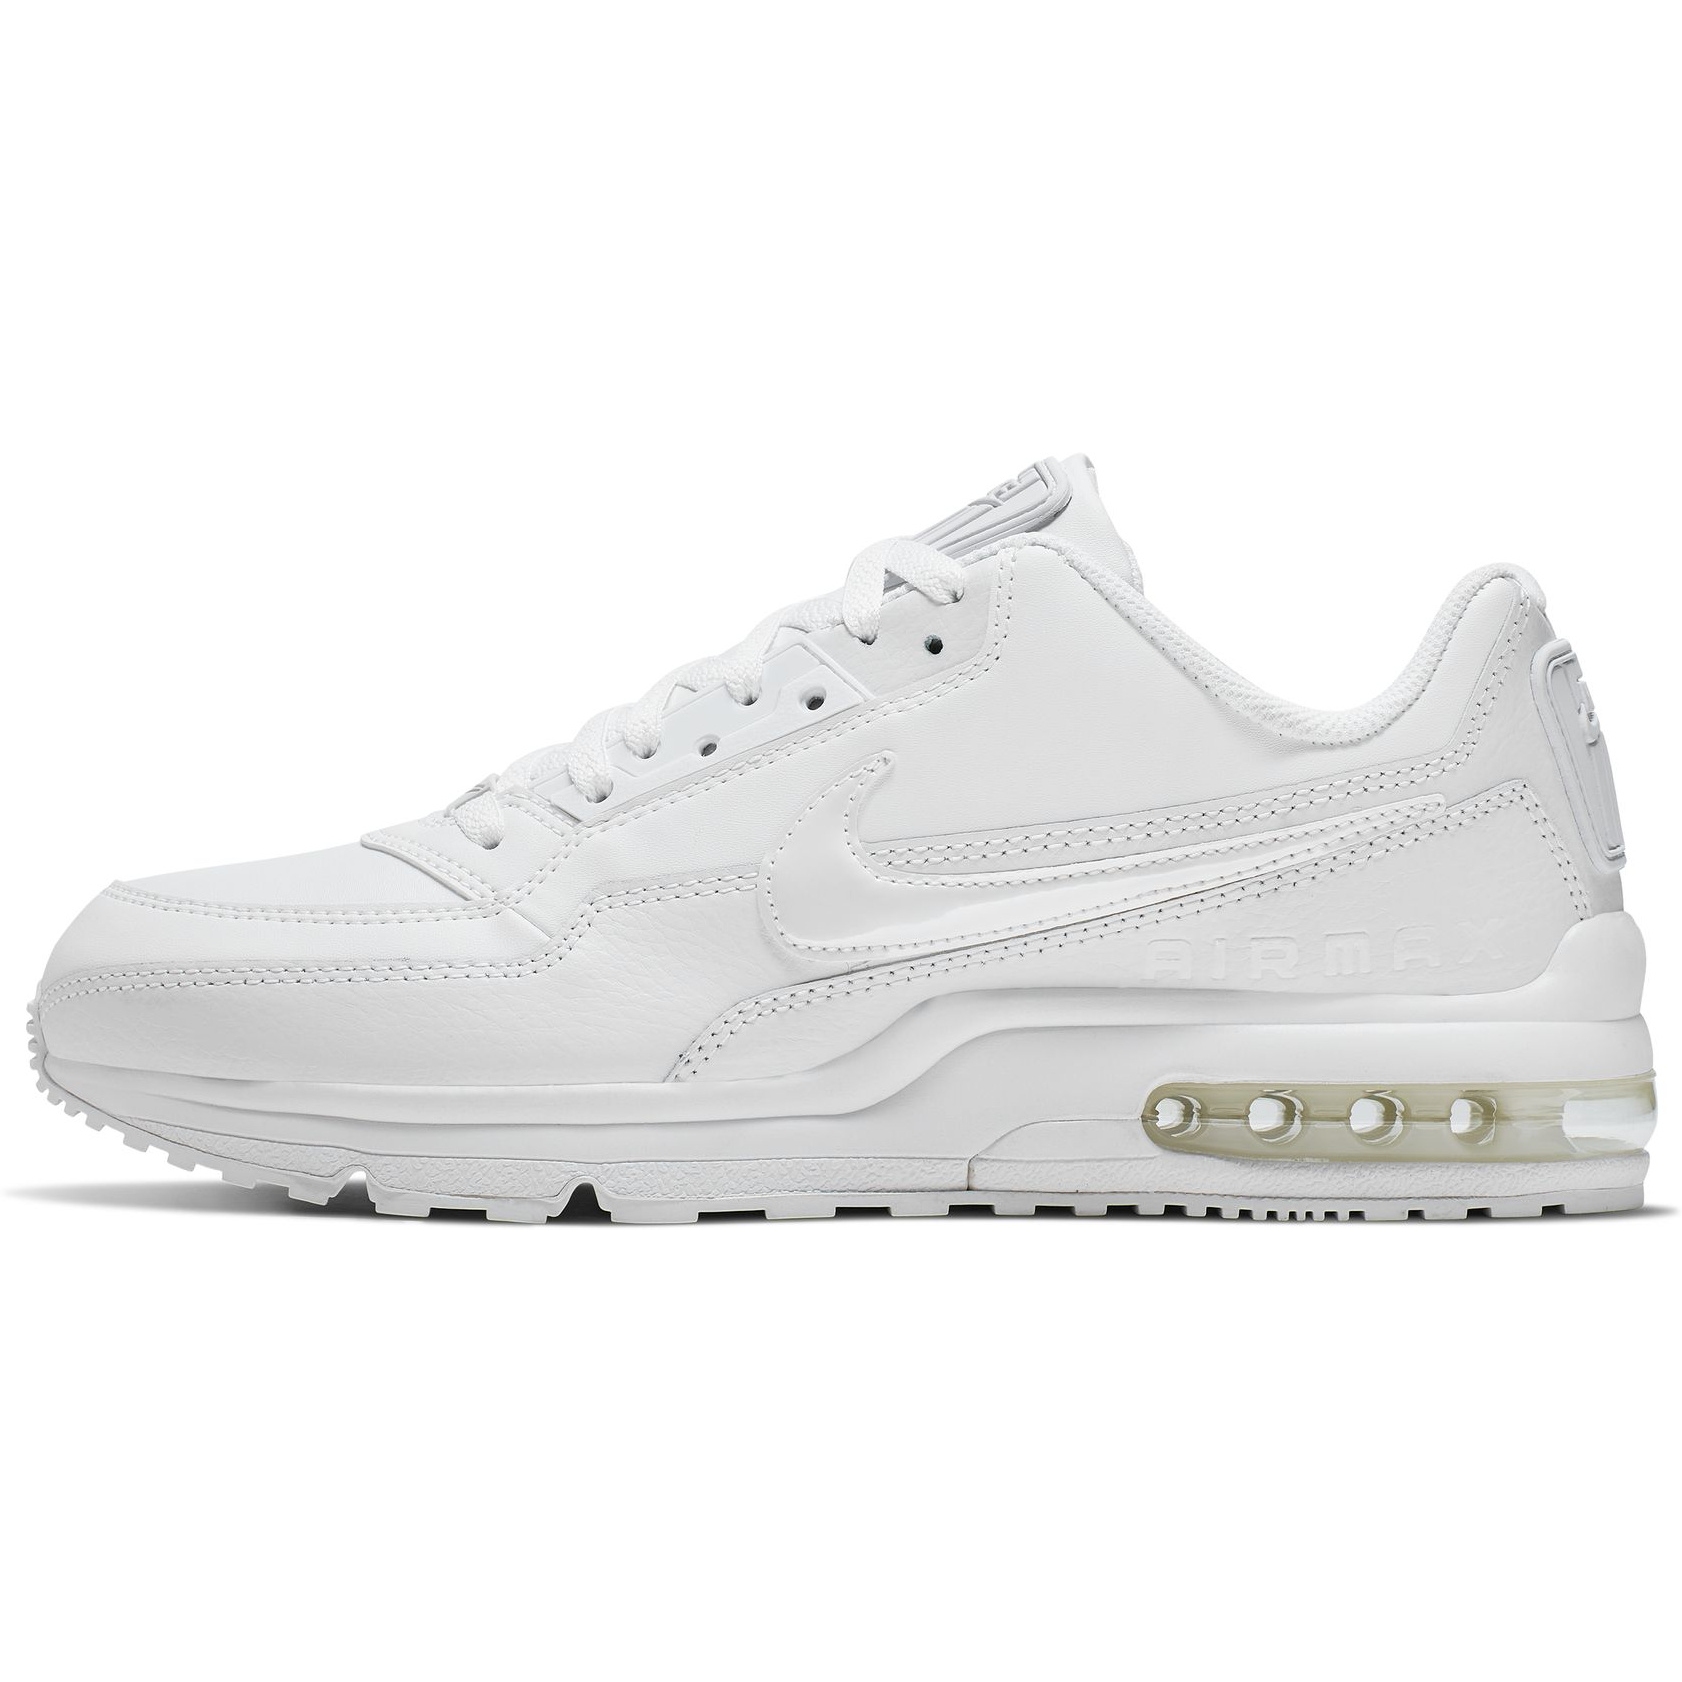 Produktbild von Nike Air Max LTD 3 Schuhe Herren - white/white-white 687977-111